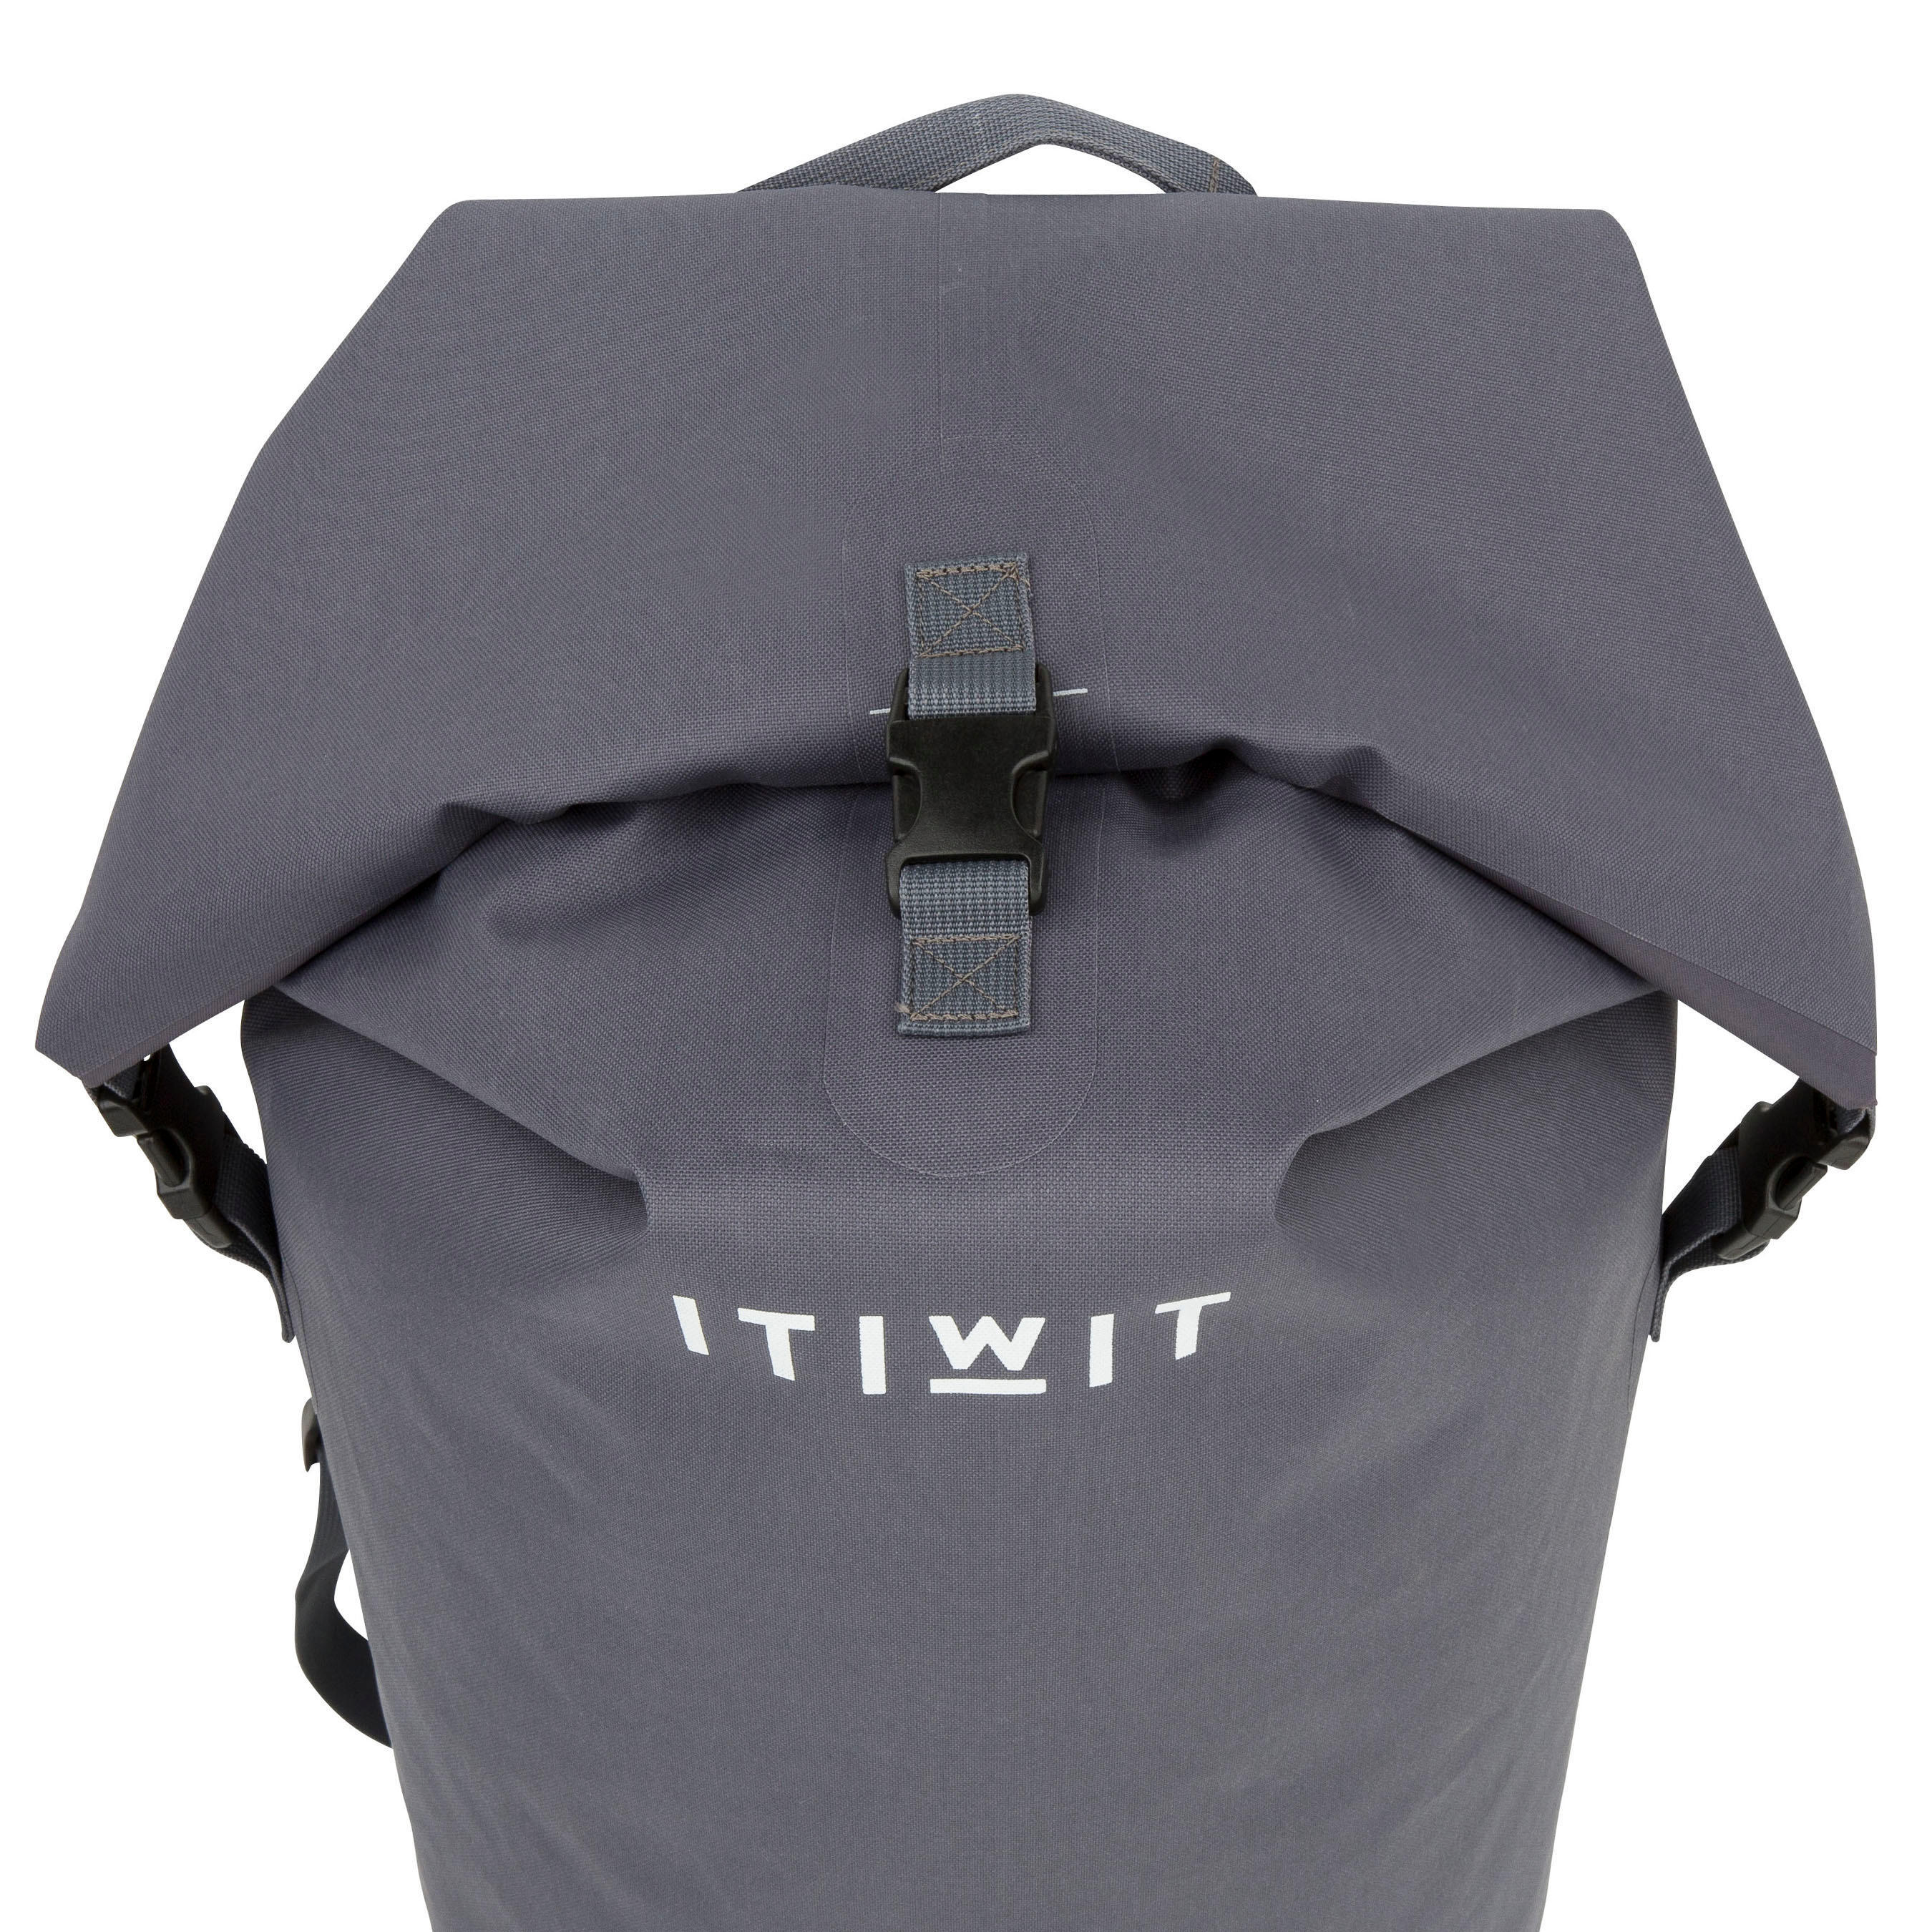 Waterproof Bag 60 L IPX6, grey 10/13